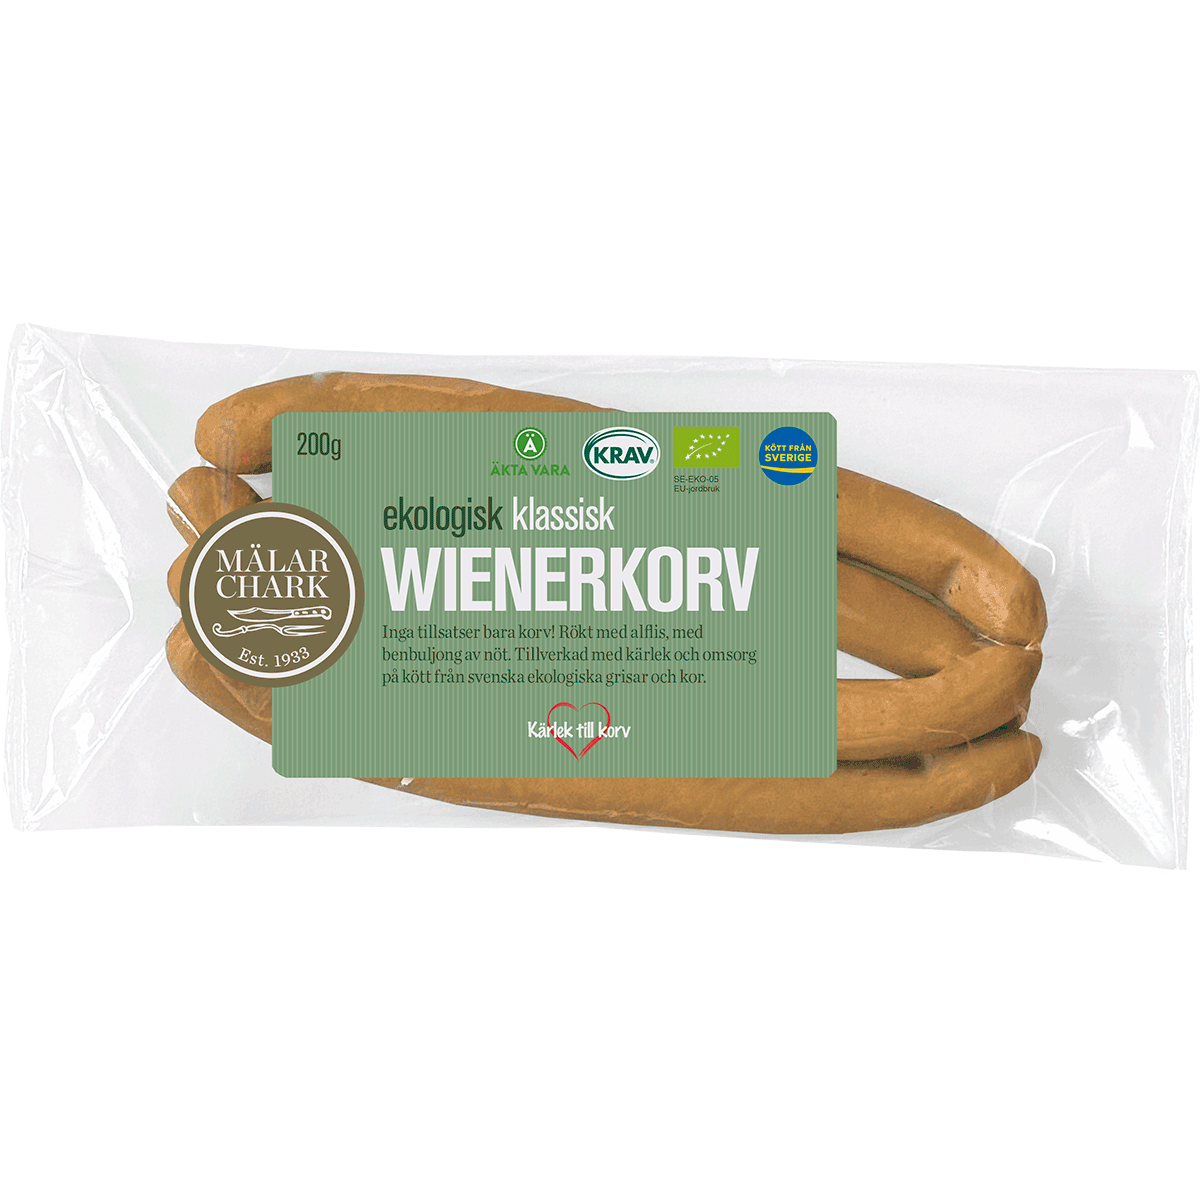 Mälarchark's Wienerkorv'